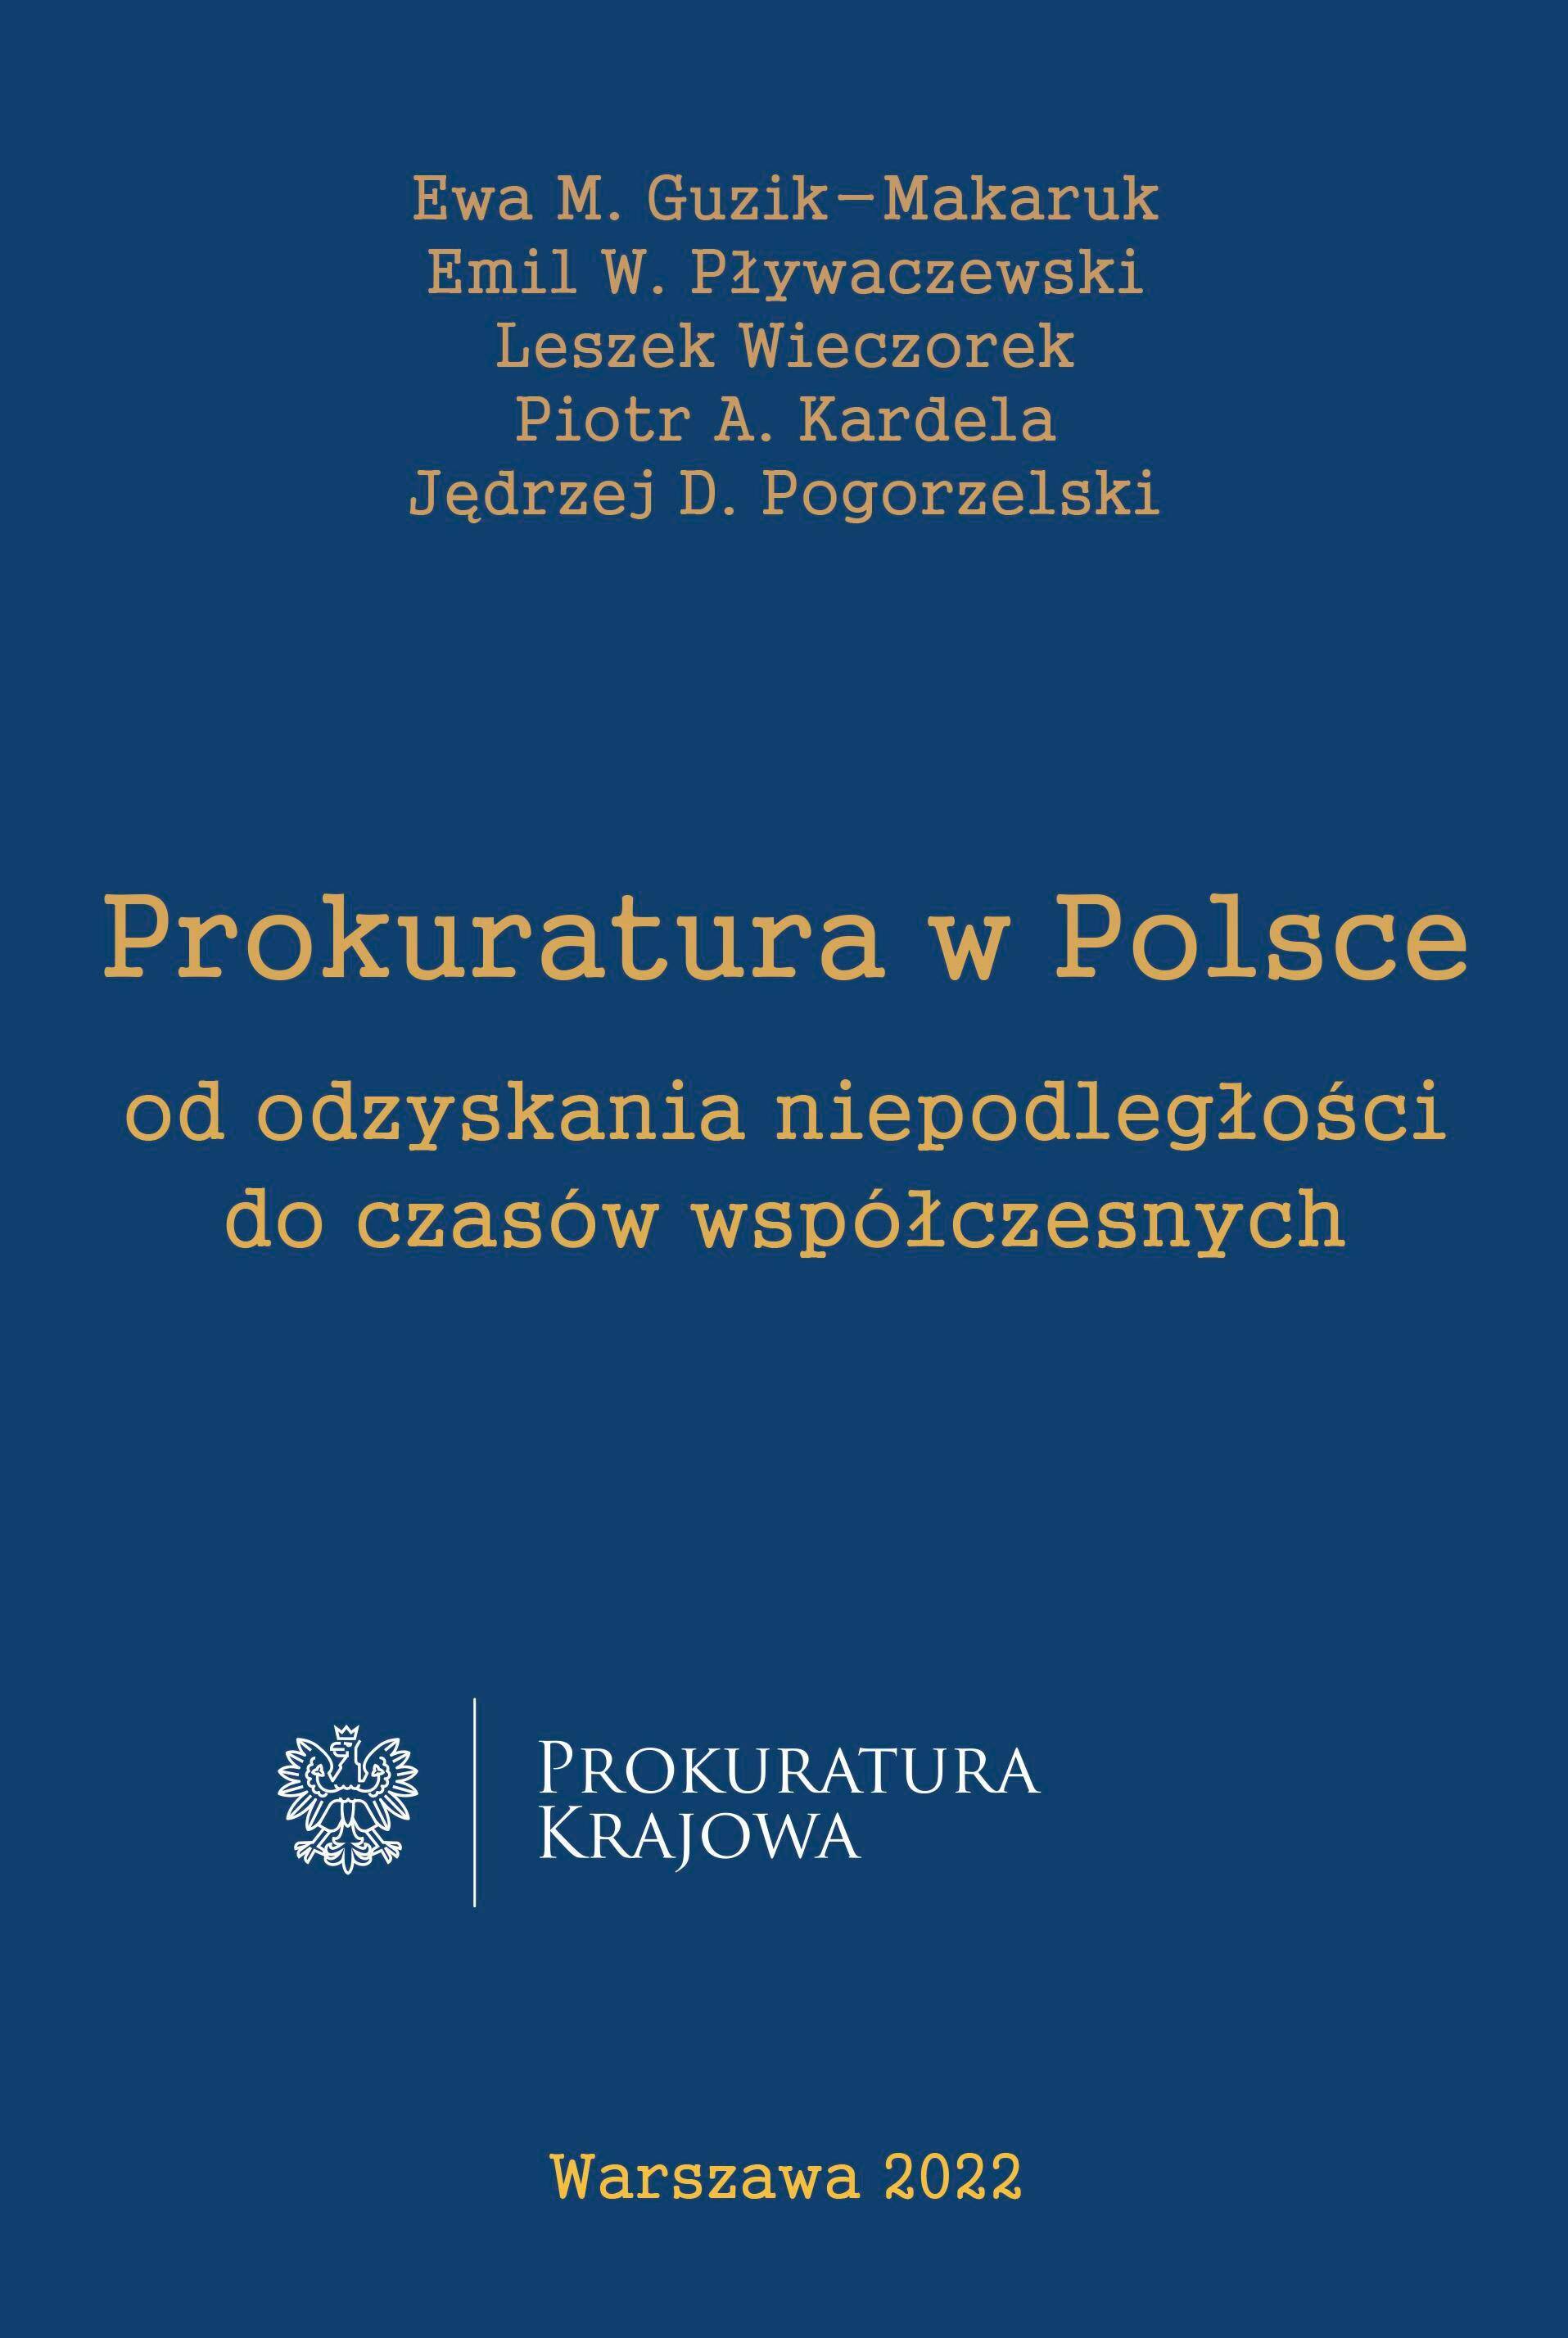 Prokuratura w Polsce od uzyskania niepodległości do czasów współczesnych